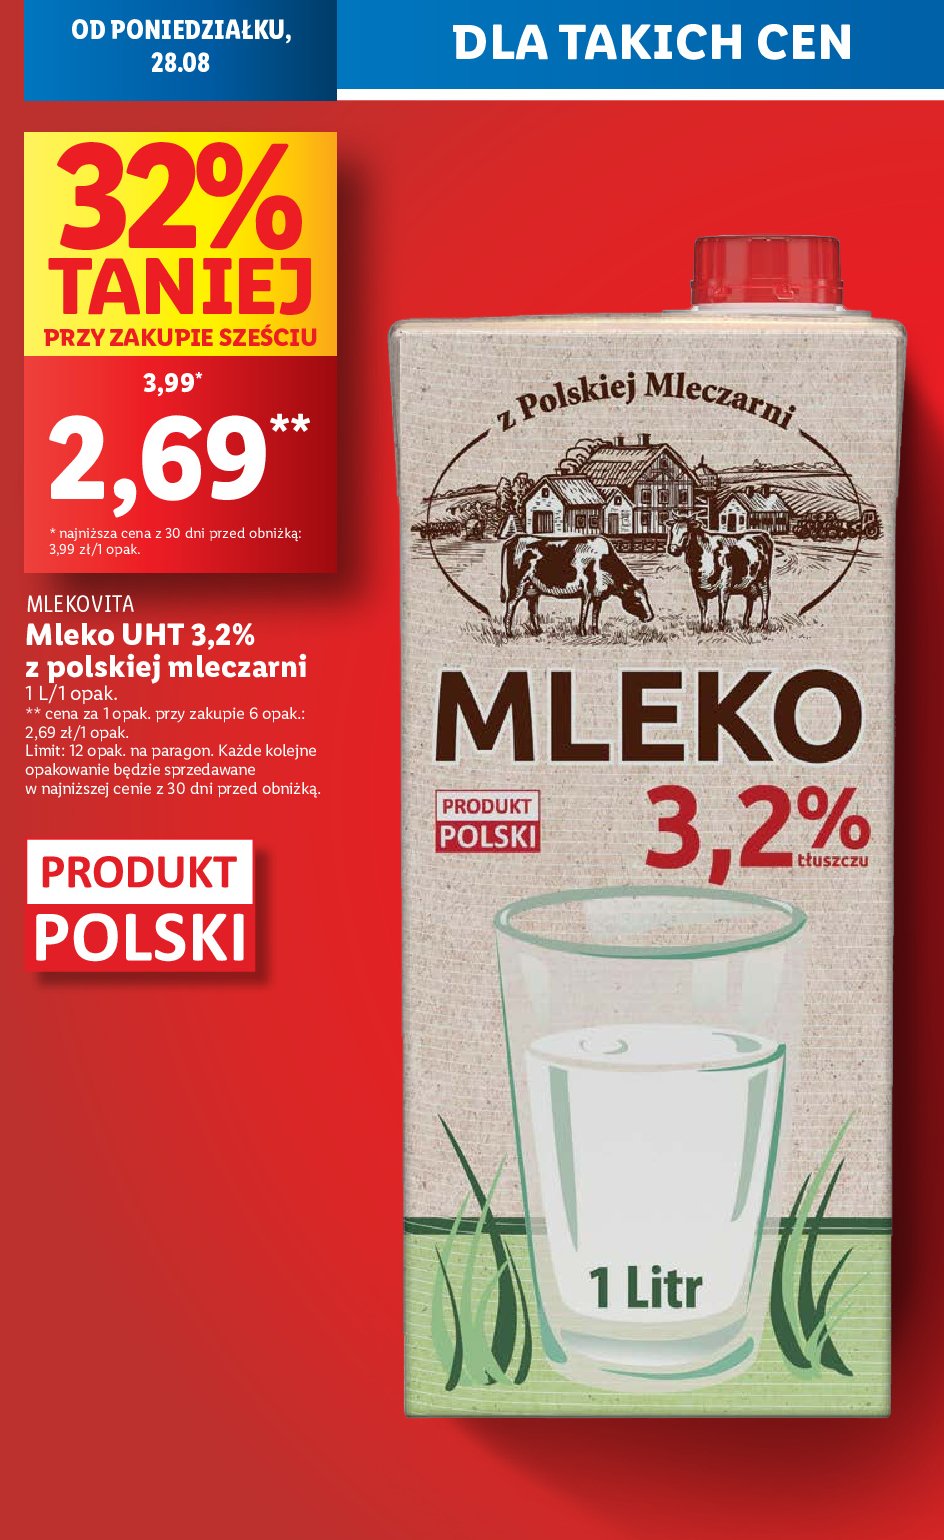 Mleko 3.2 % promocja